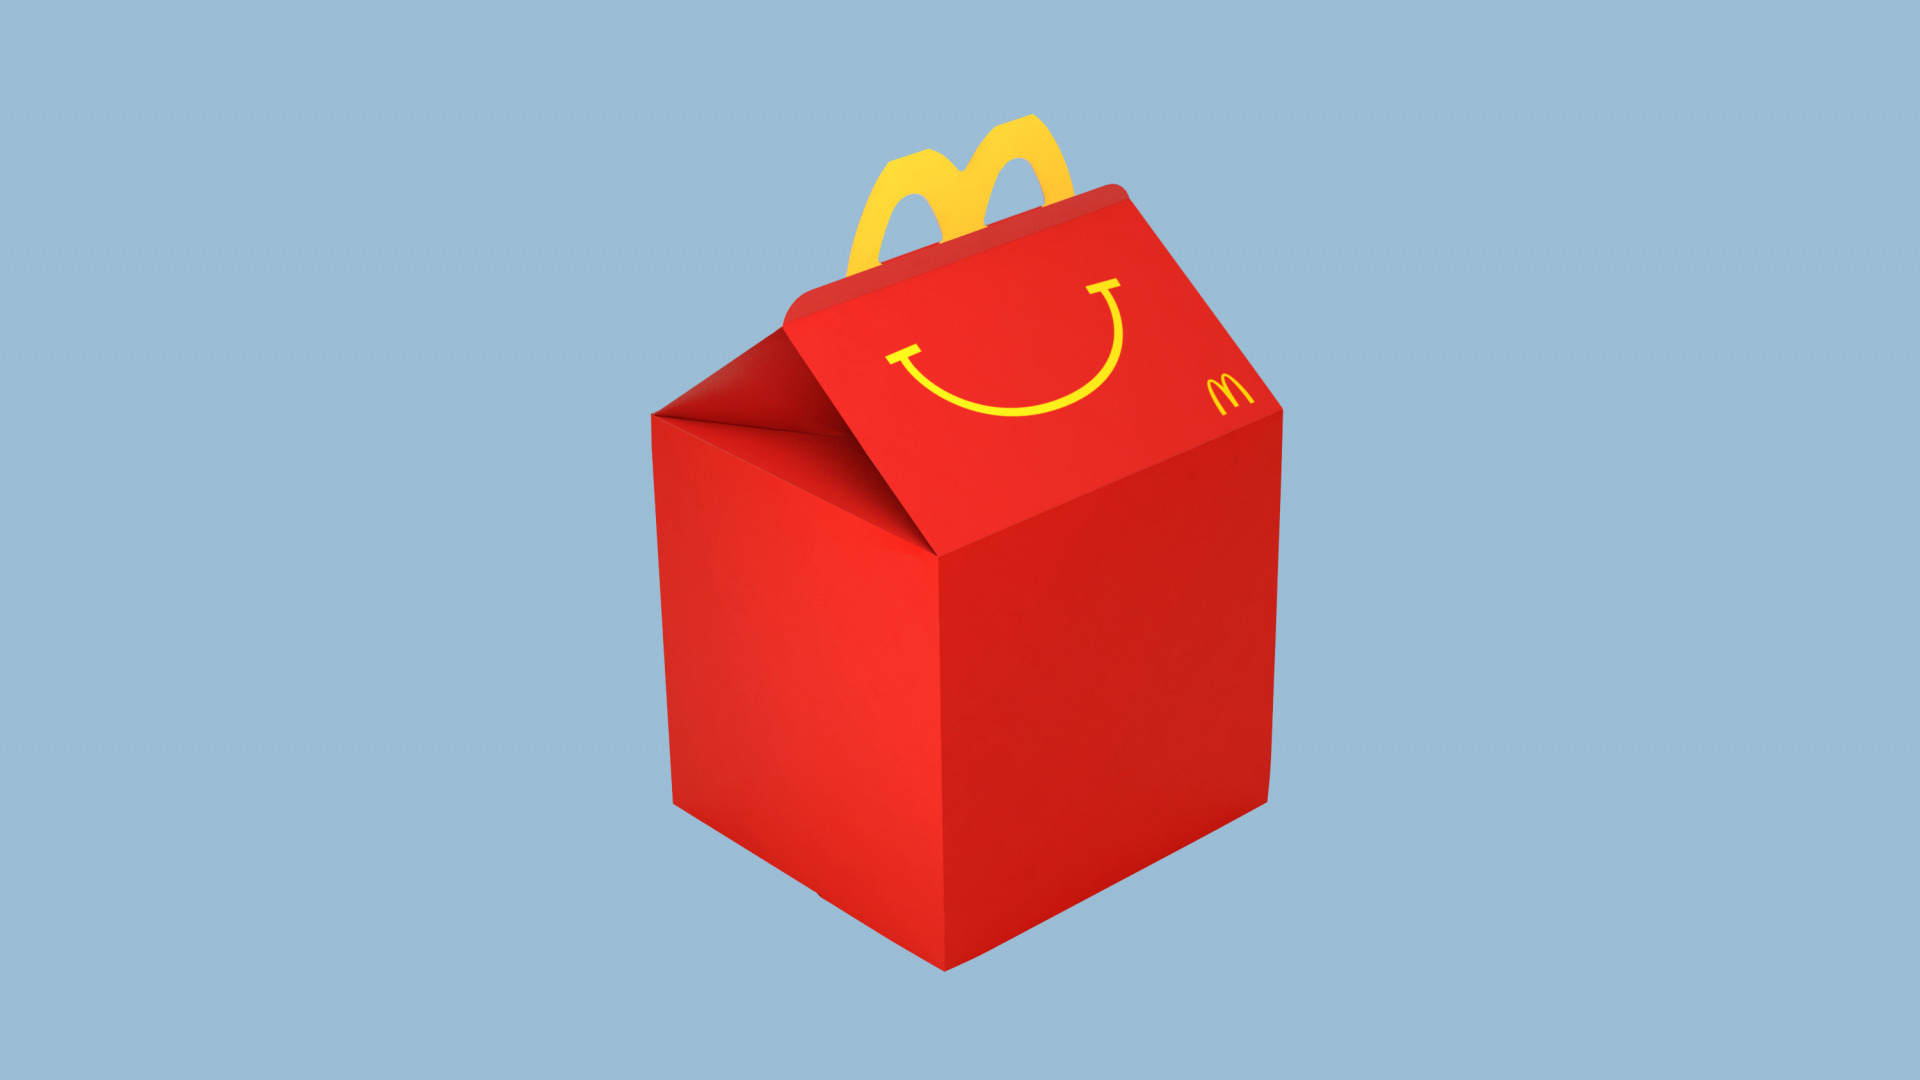 กระแส VR มาแรง!! ซื้อ Happy Meal จาก McDonald’s แปลงเป็นแว่น VR ได้